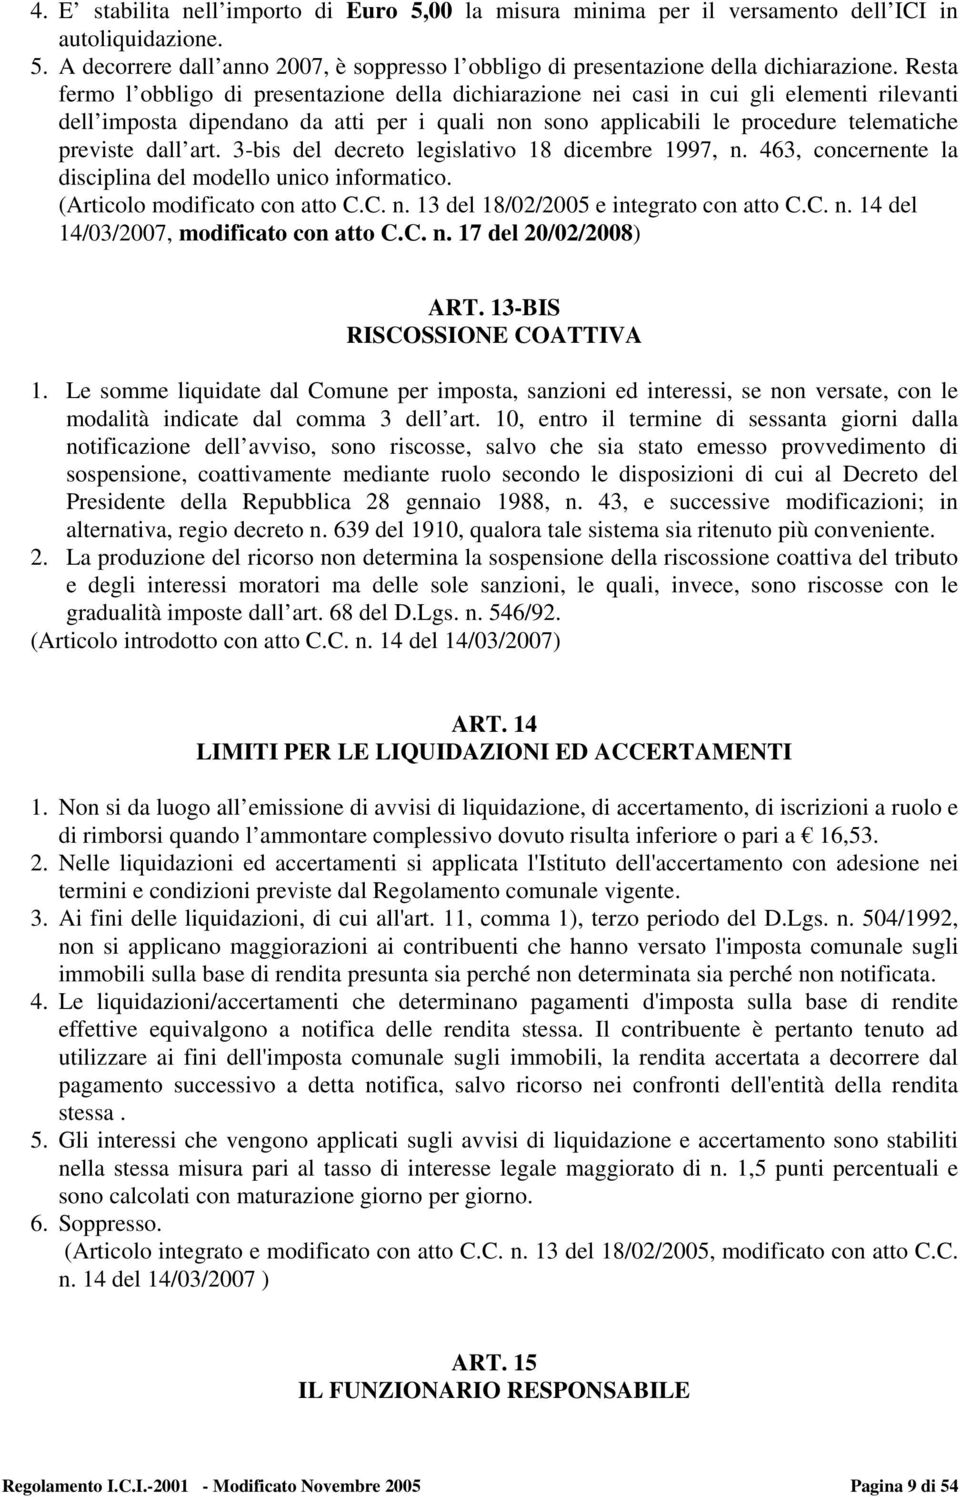 dall art. 3-bis del decreto legislativo 18 dicembre 1997, n. 463, concernente la disciplina del modello unico informatico. (Articolo modificato con atto C.C. n. 13 del 18/02/2005 e integrato con atto C.